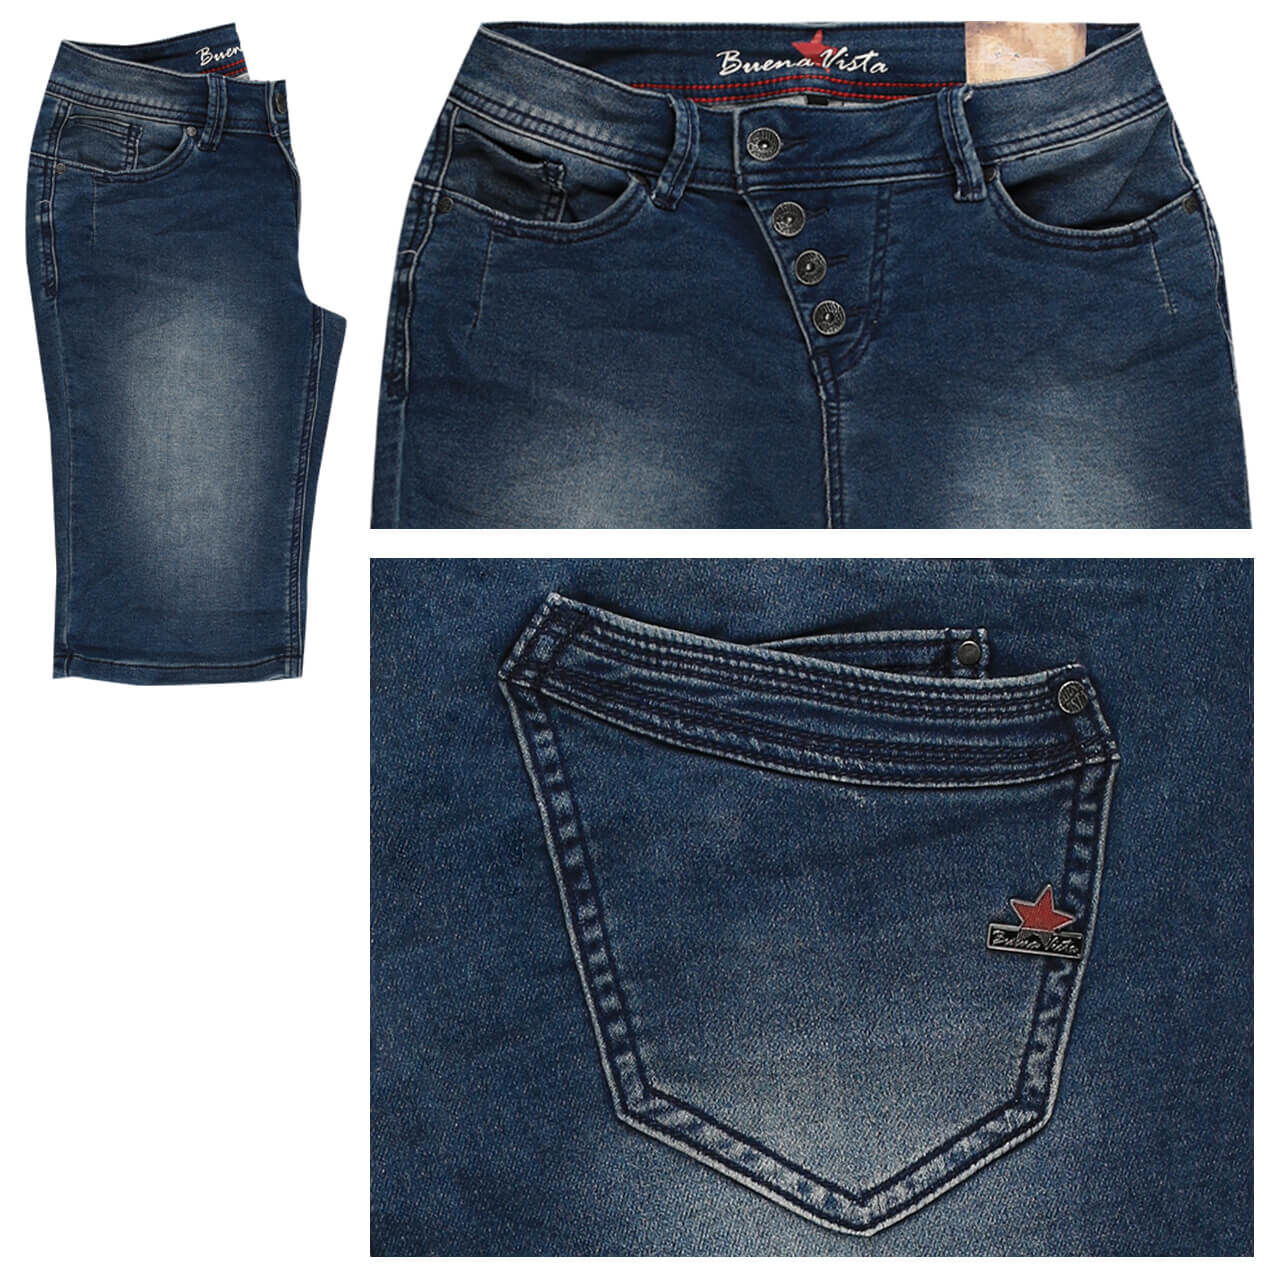 Buena Vista Jeans Malibu-Short Sweat Denim für Damen in Dunkelblau verwaschen, FarbNr.: 2890